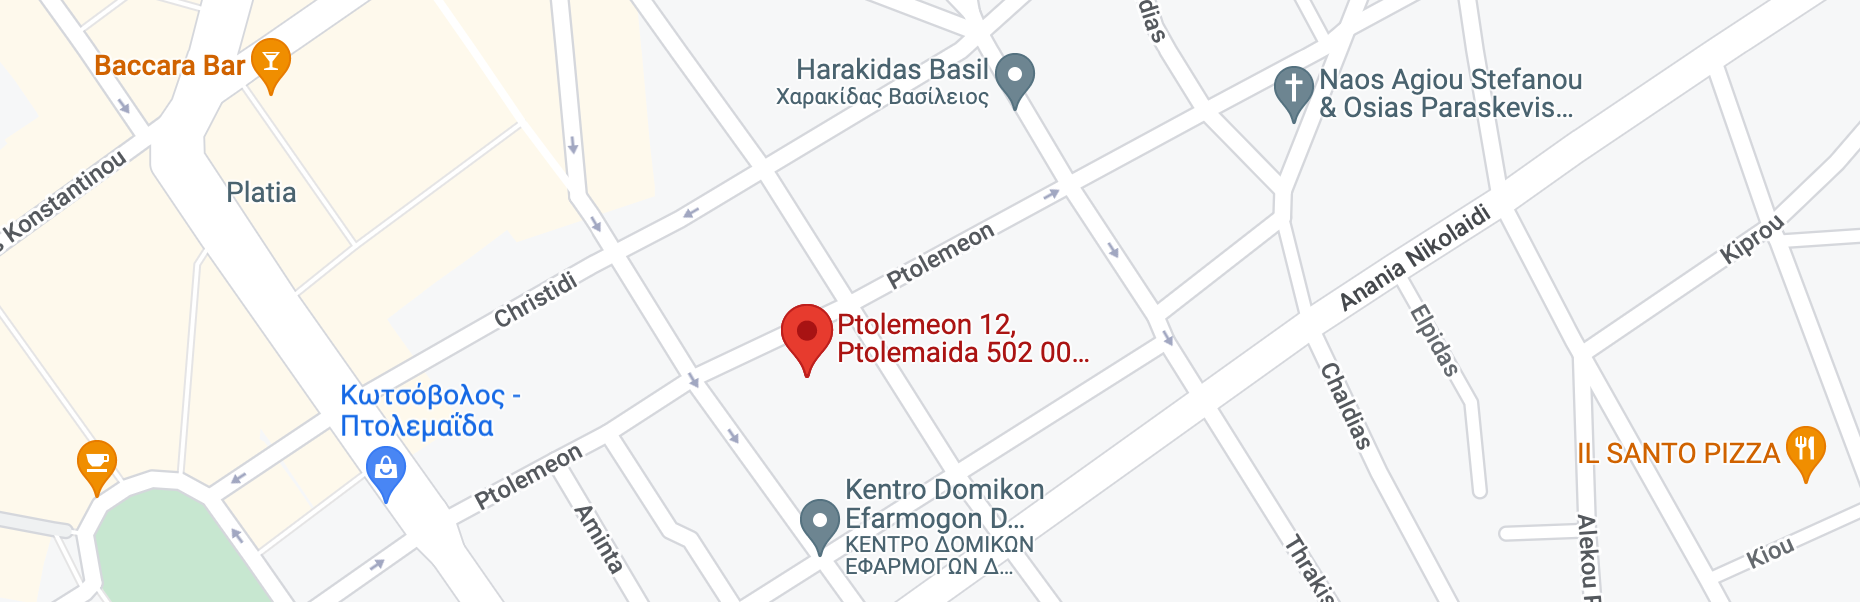 Εικόνα του χάρτη που καρφιτσώνει τη θέση του Γραφείου Στέφανου Τσίκα στην Πτολεμαΐδα